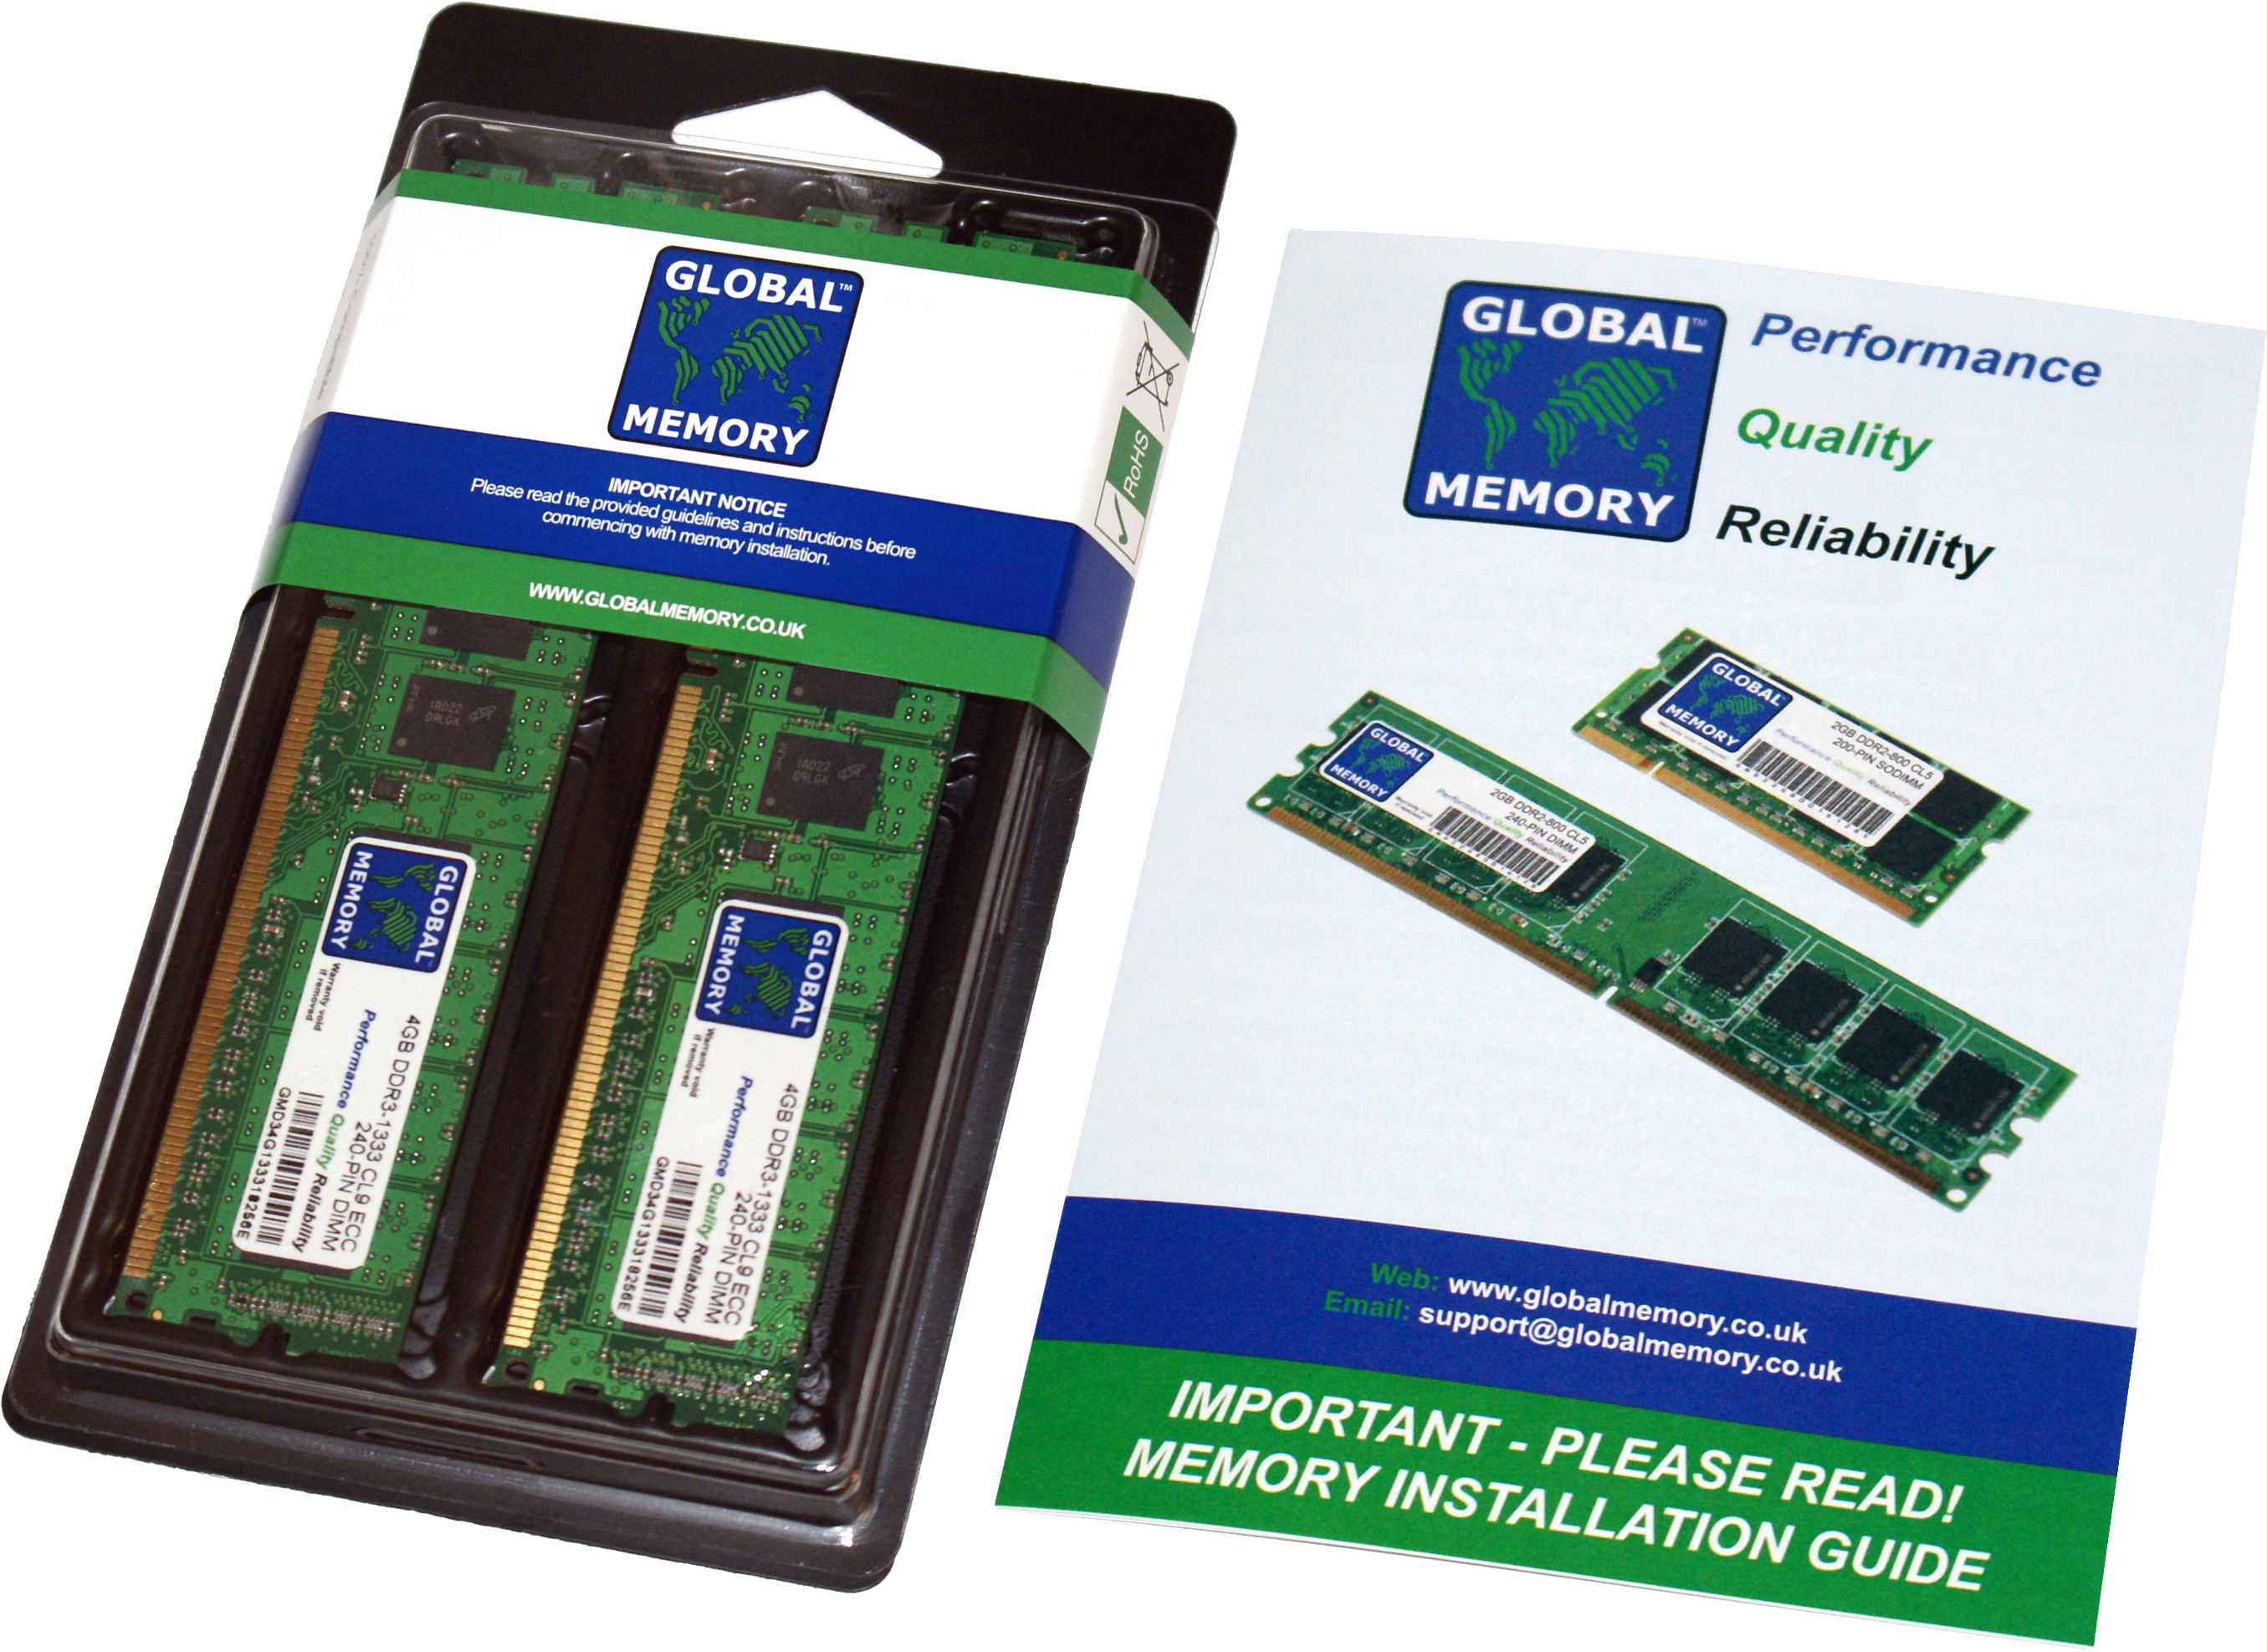 8GB (2 x 4GB) DDR3 1866MHz PC3-14900 240-PIN ECC DIMM (UDIMM) MEMORY RAM KIT FOR HEWLETT-PACKARD SERVERS/WORKSTATIONS